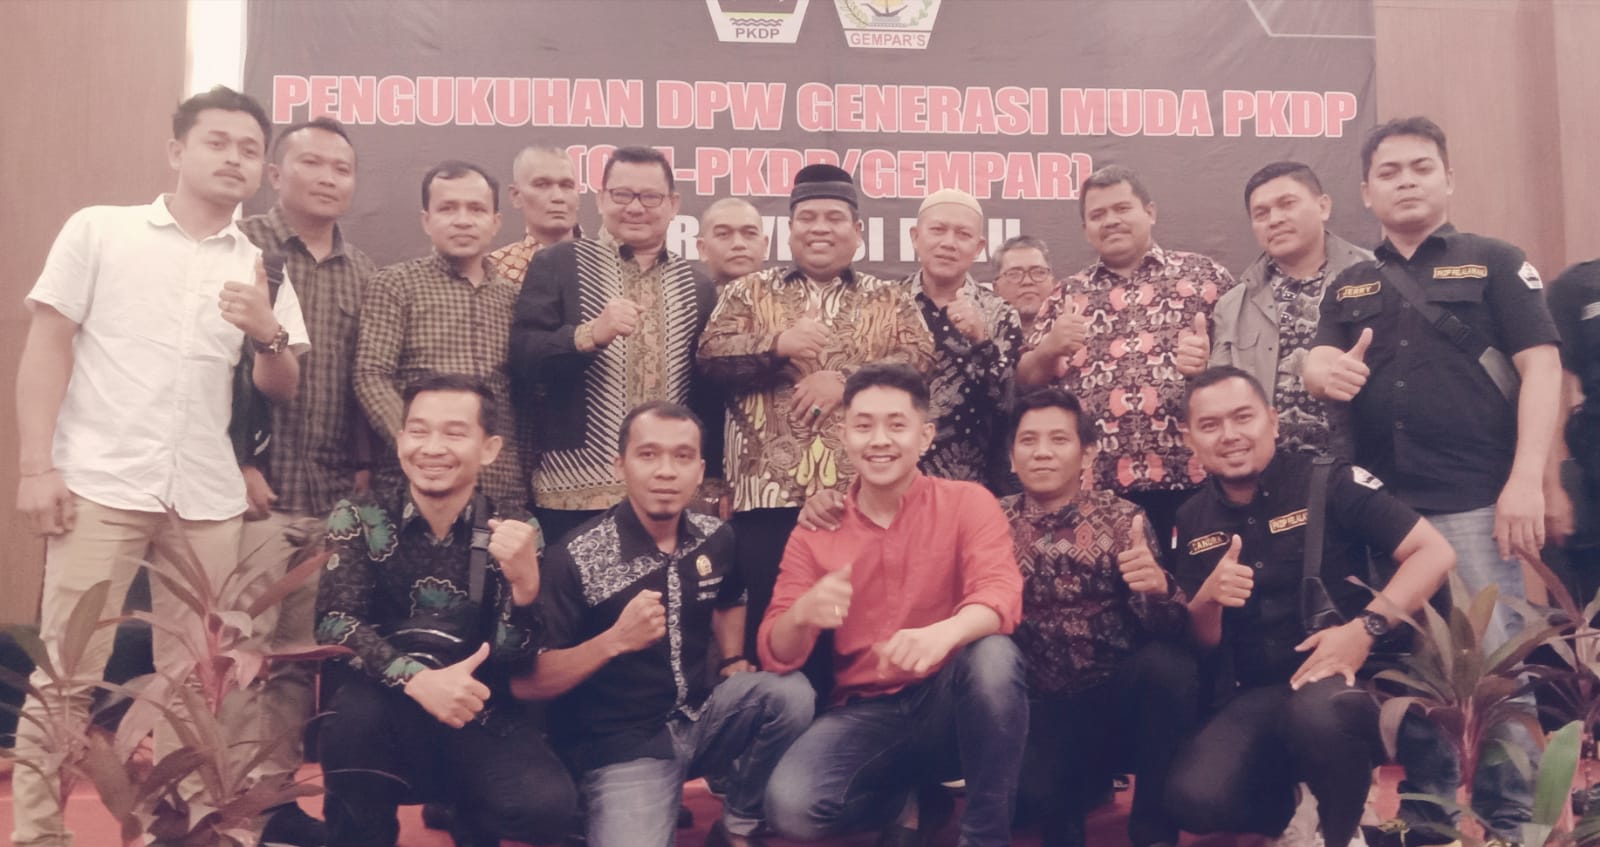 Ketua DPC PKDP INHU  Yumasril Awang Menghadiri Pengukuhan  DPW GM-PKDP Gempar  Riau Periode 2022-2027